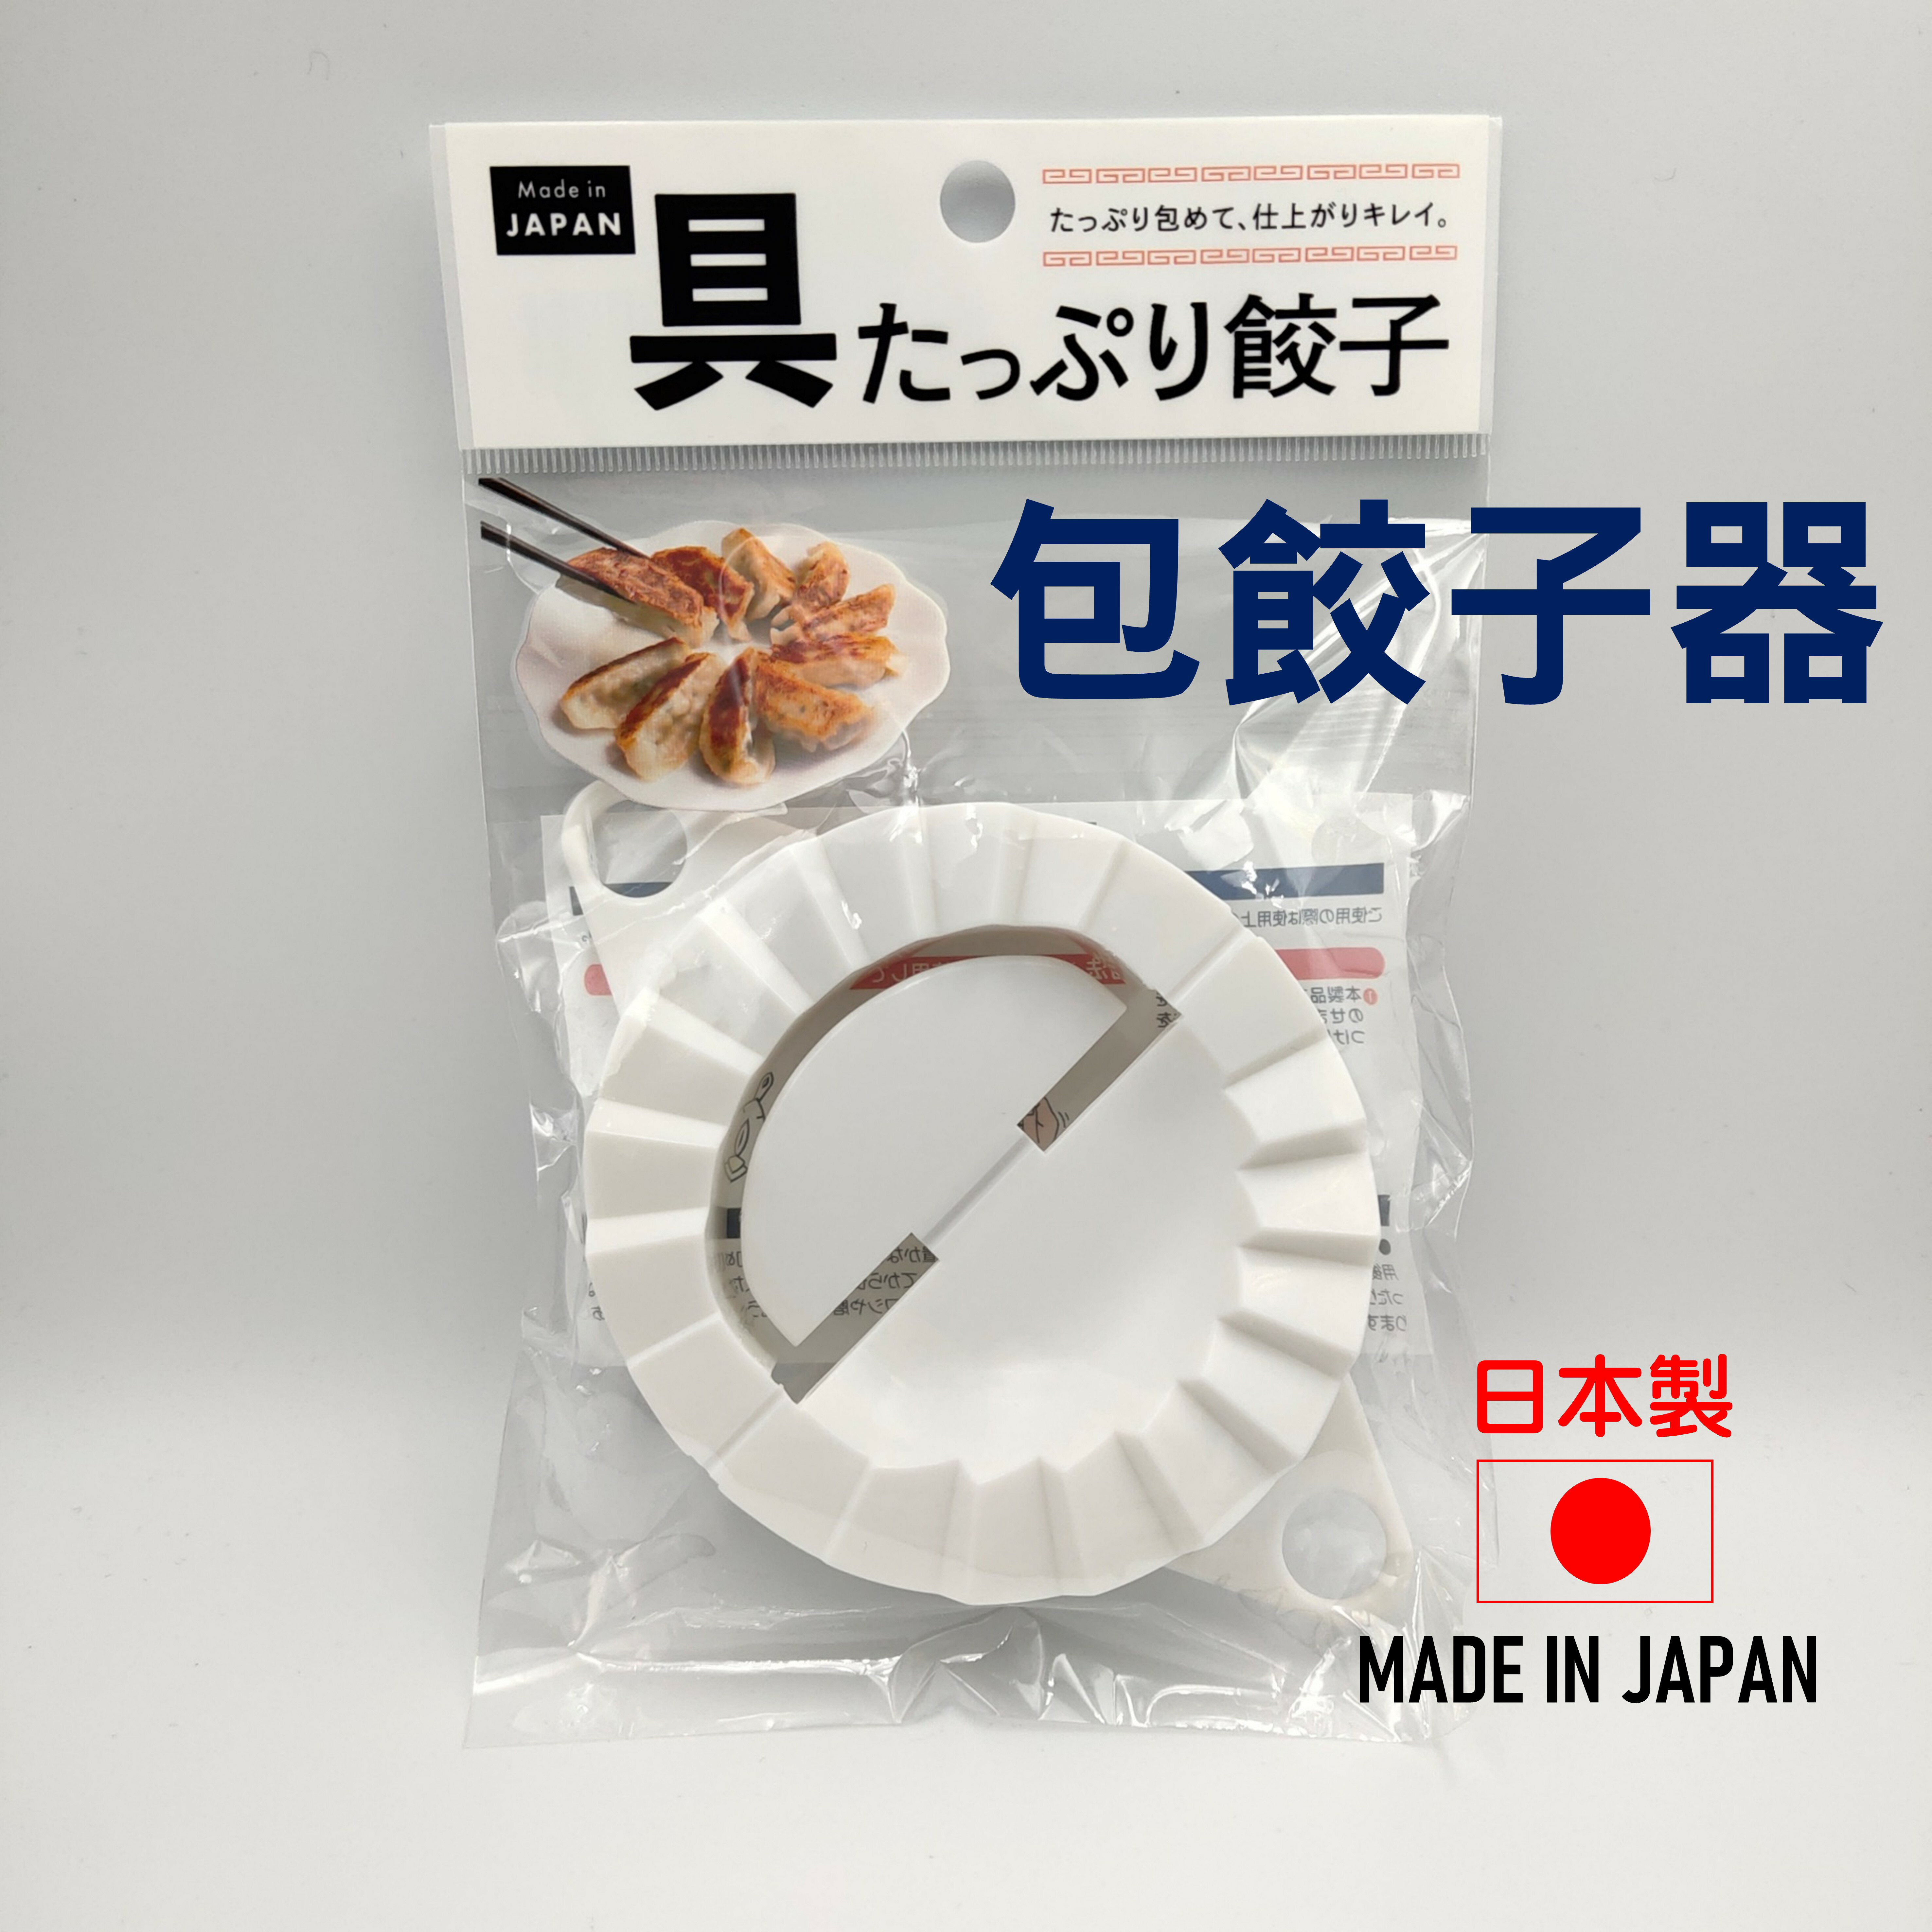 日本 包餃子工具 包餃神器 包餃器 餃子模具 包水餃工具